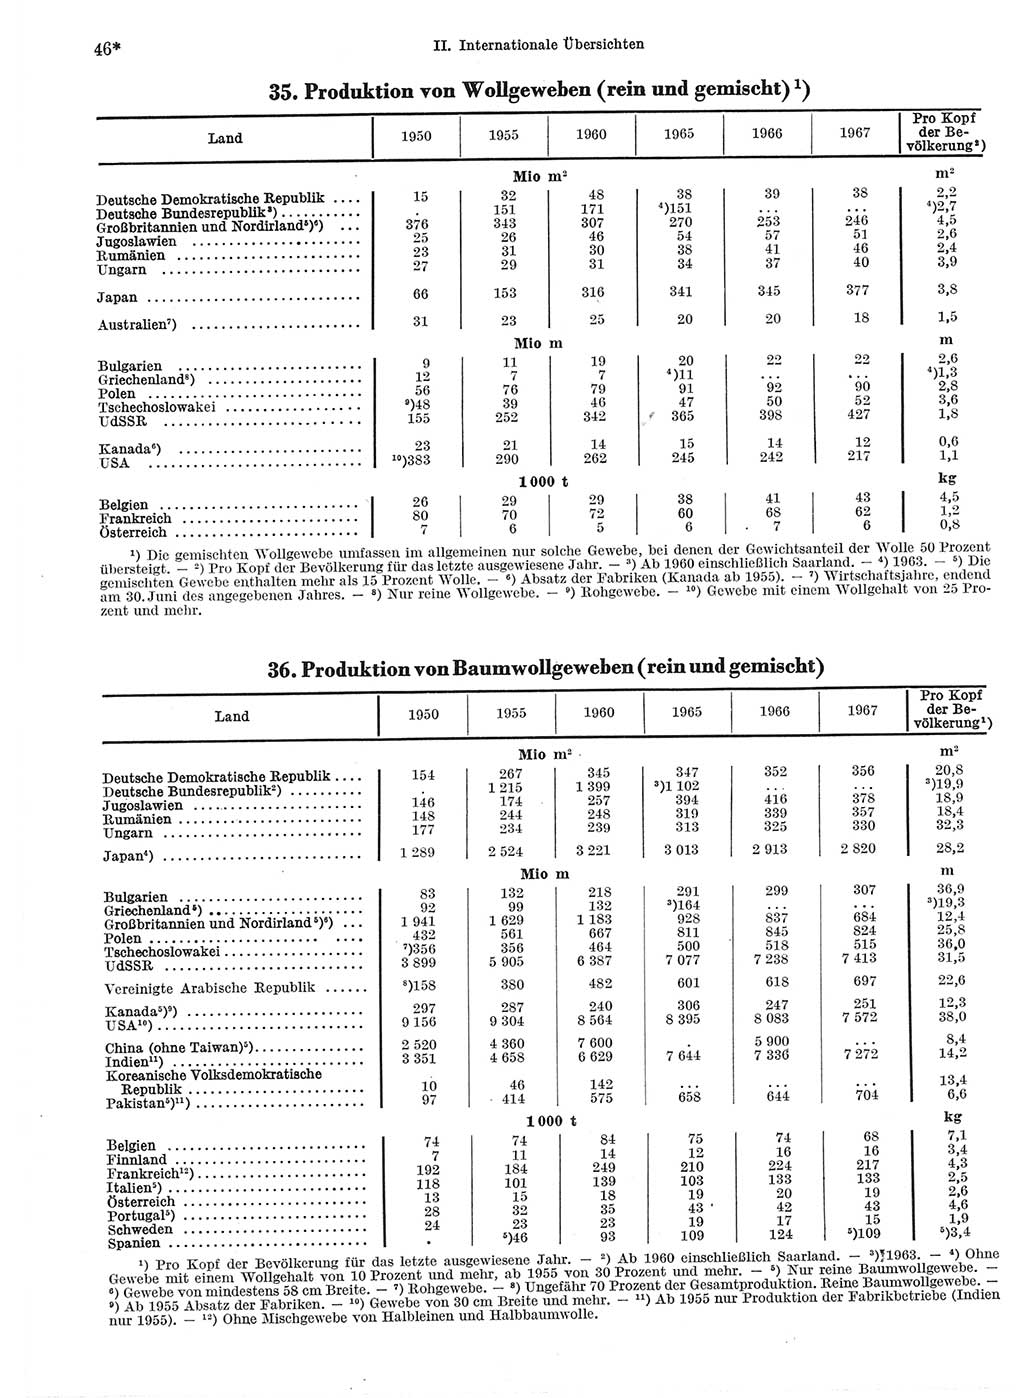 Statistisches Jahrbuch der Deutschen Demokratischen Republik (DDR) 1969, Seite 46 (Stat. Jb. DDR 1969, S. 46)